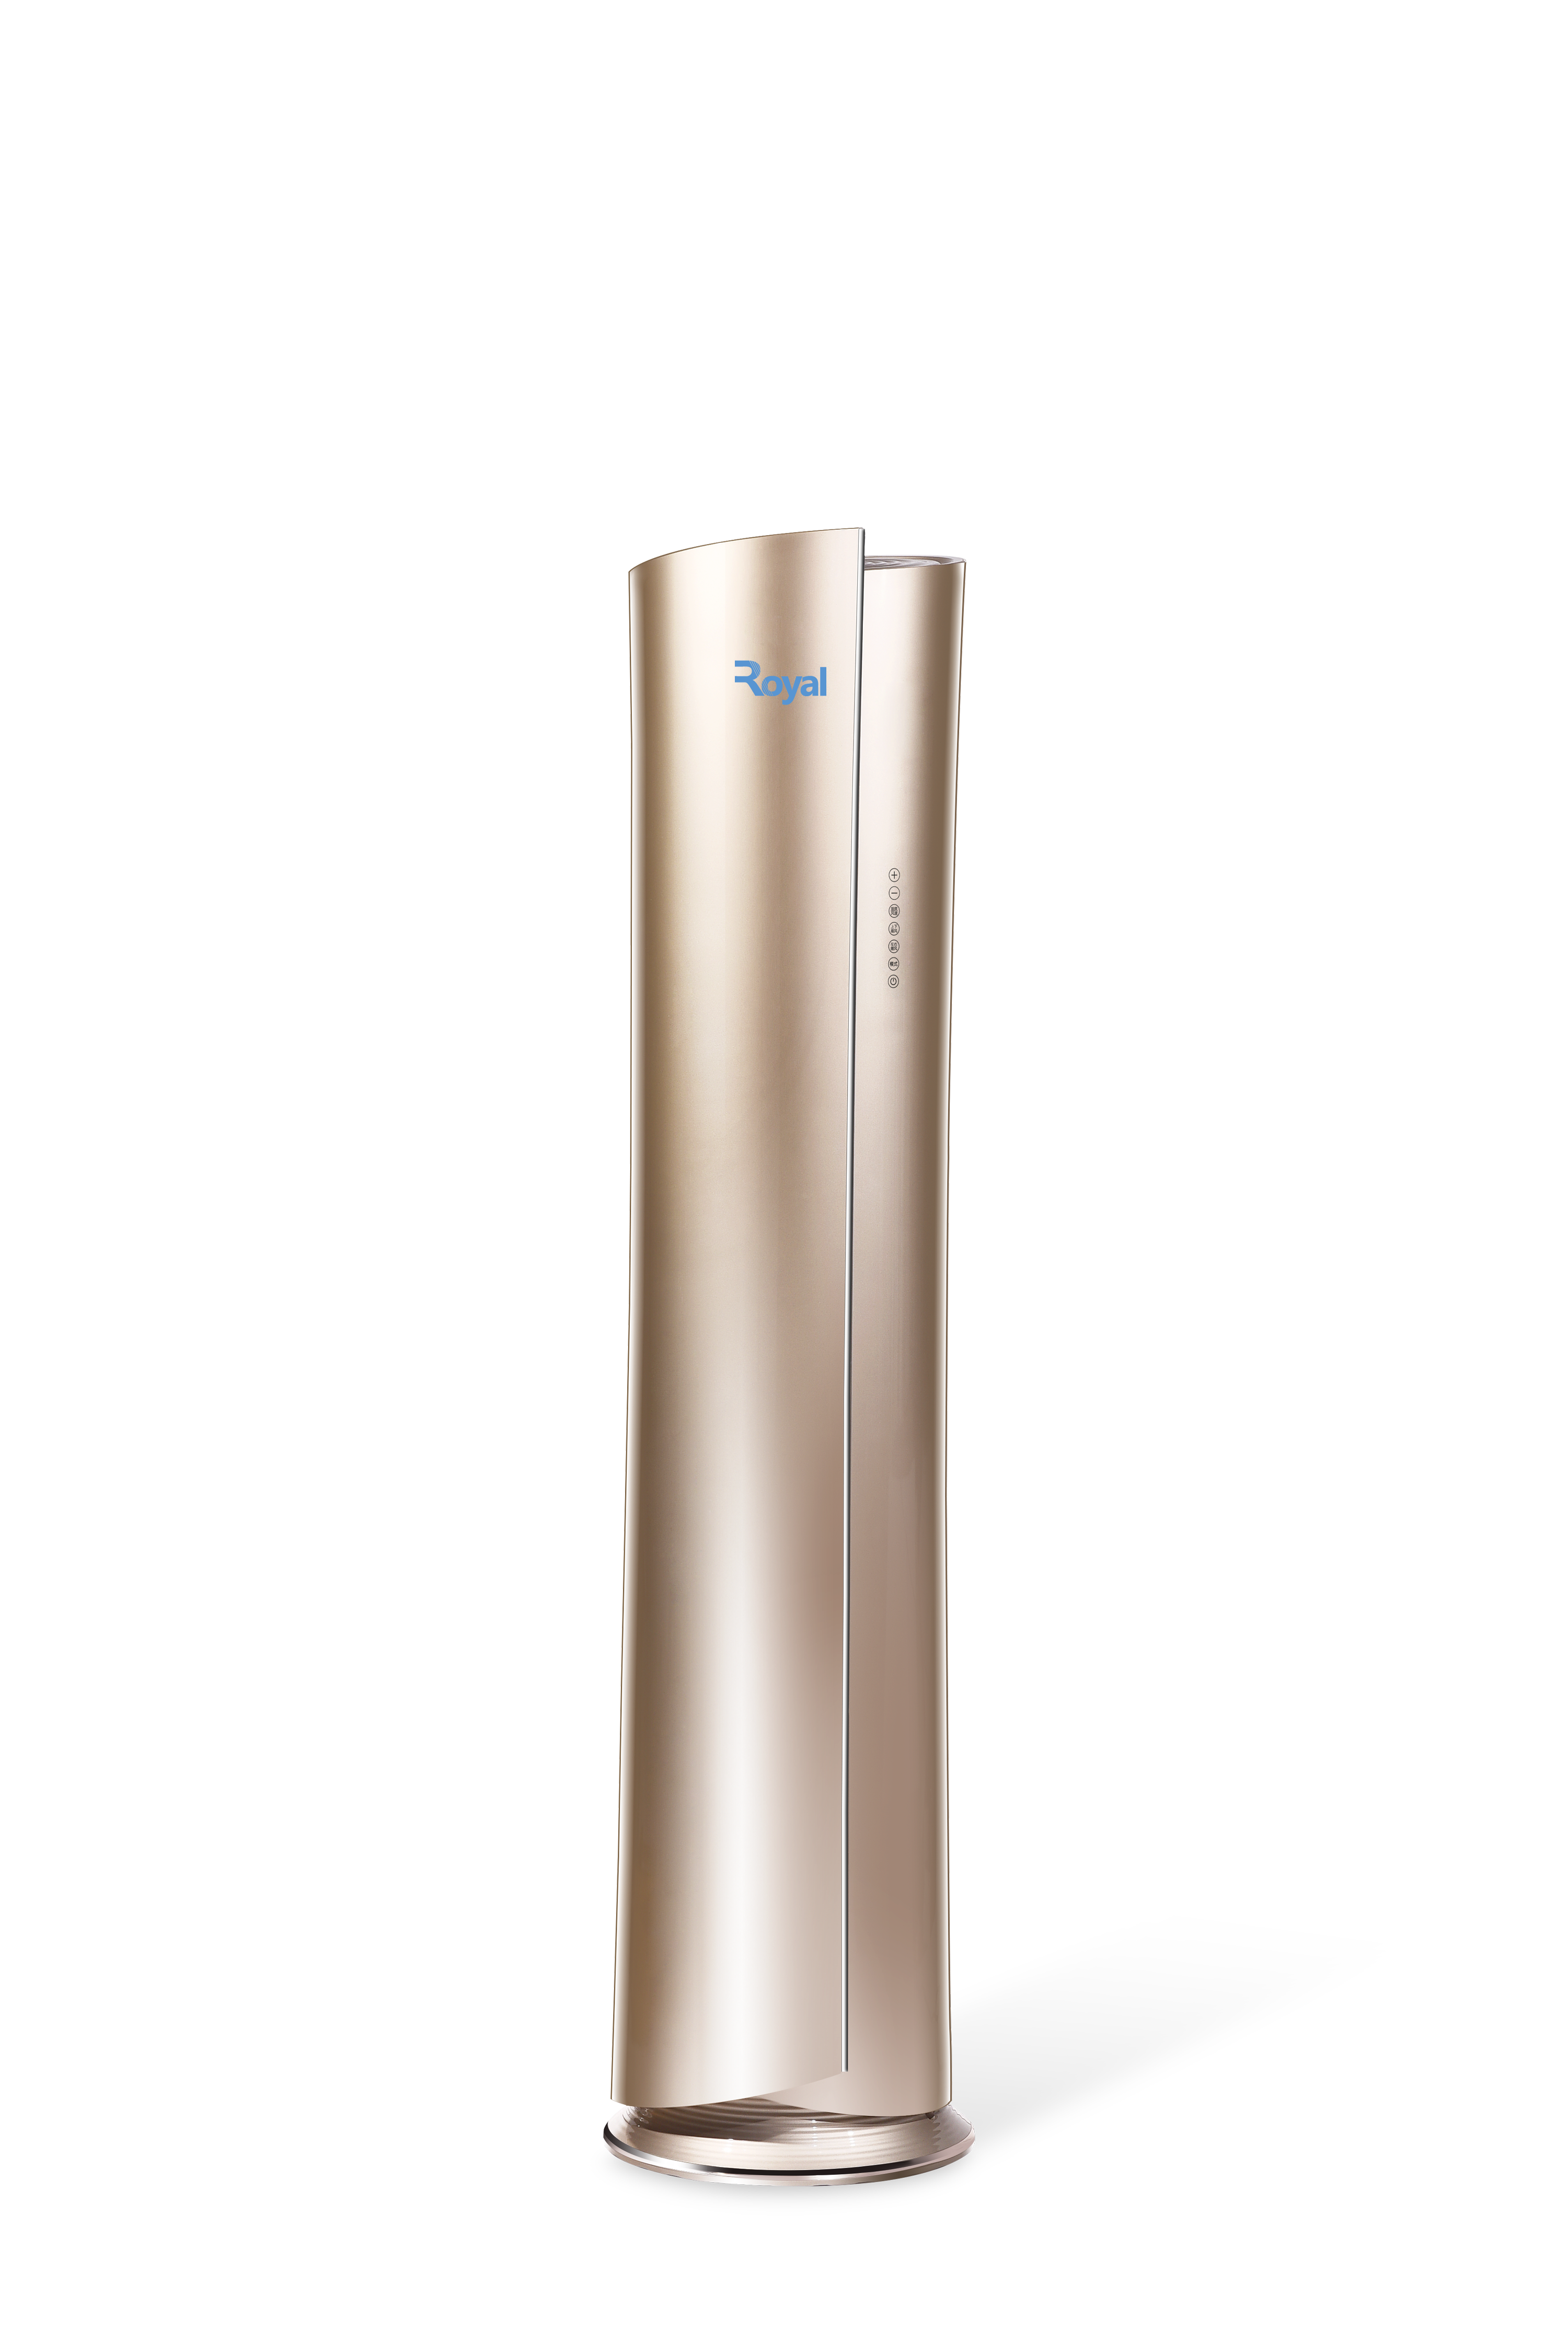 Royal Burj Khalifa Gold 3HP Inverter Floor Standing Air Conditioner- HG3FAC-INV + Free Installation Kit